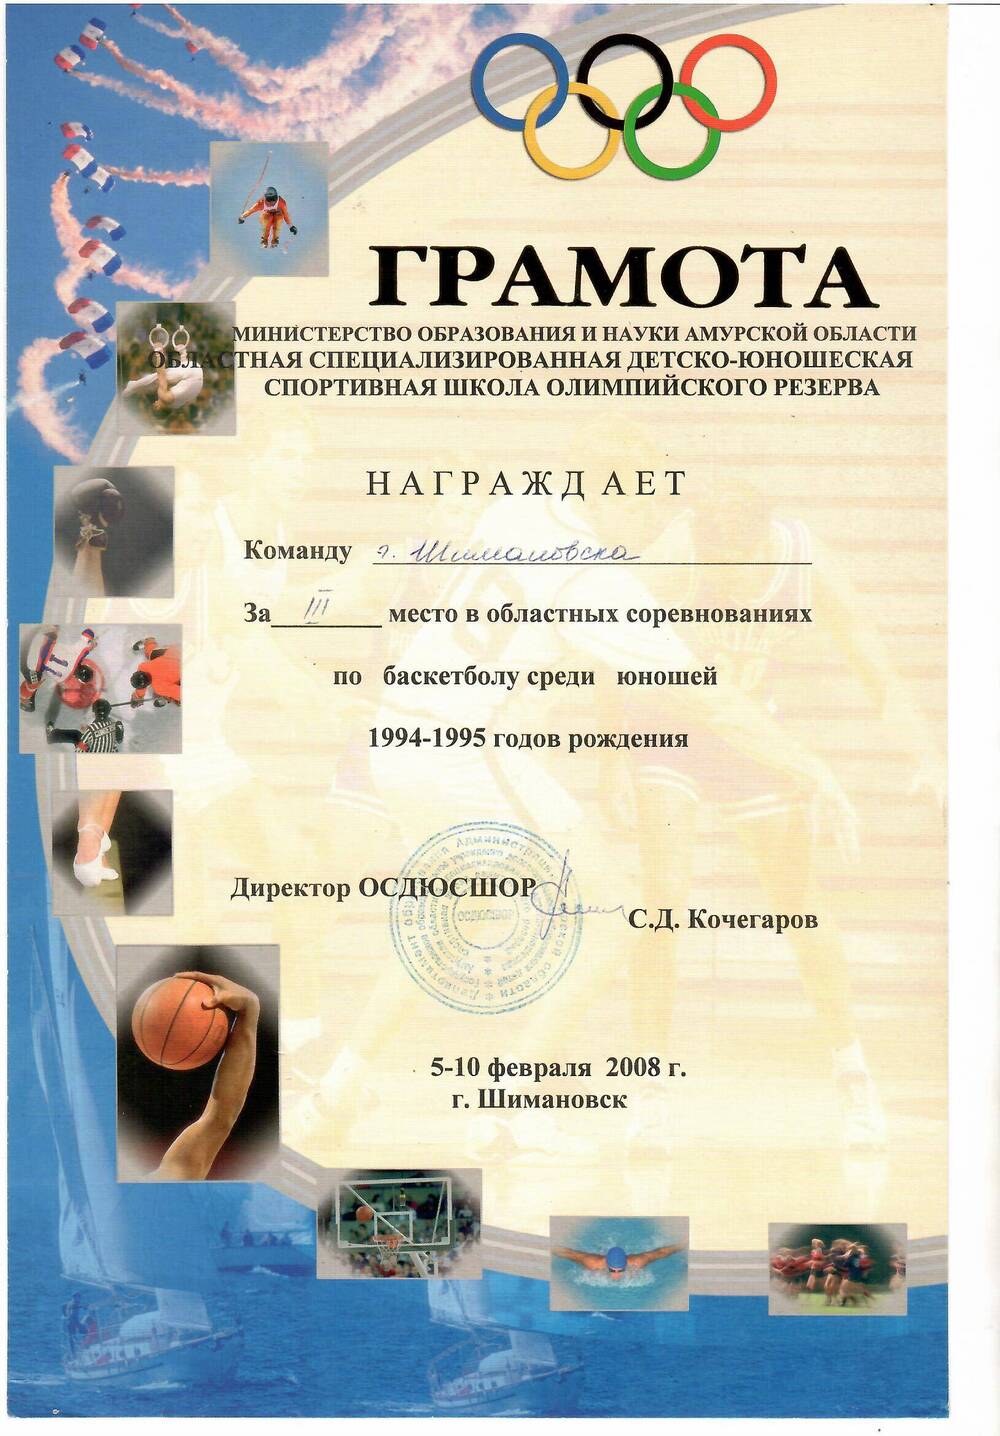 Грамота команде г. Шимановска за III место в областных соревнованиях по баскетболу среди юношей 1994-1995 г/р